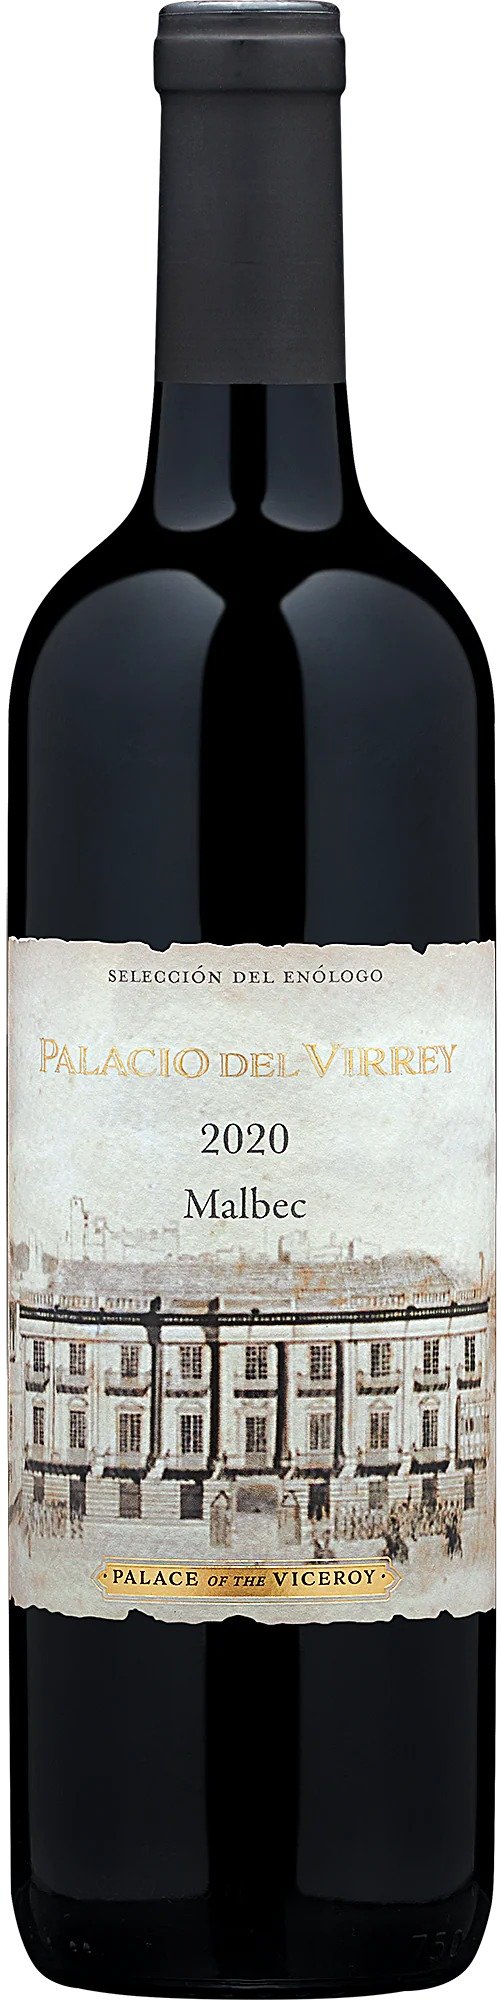 2020 Palacio del Virrey 马尔贝克